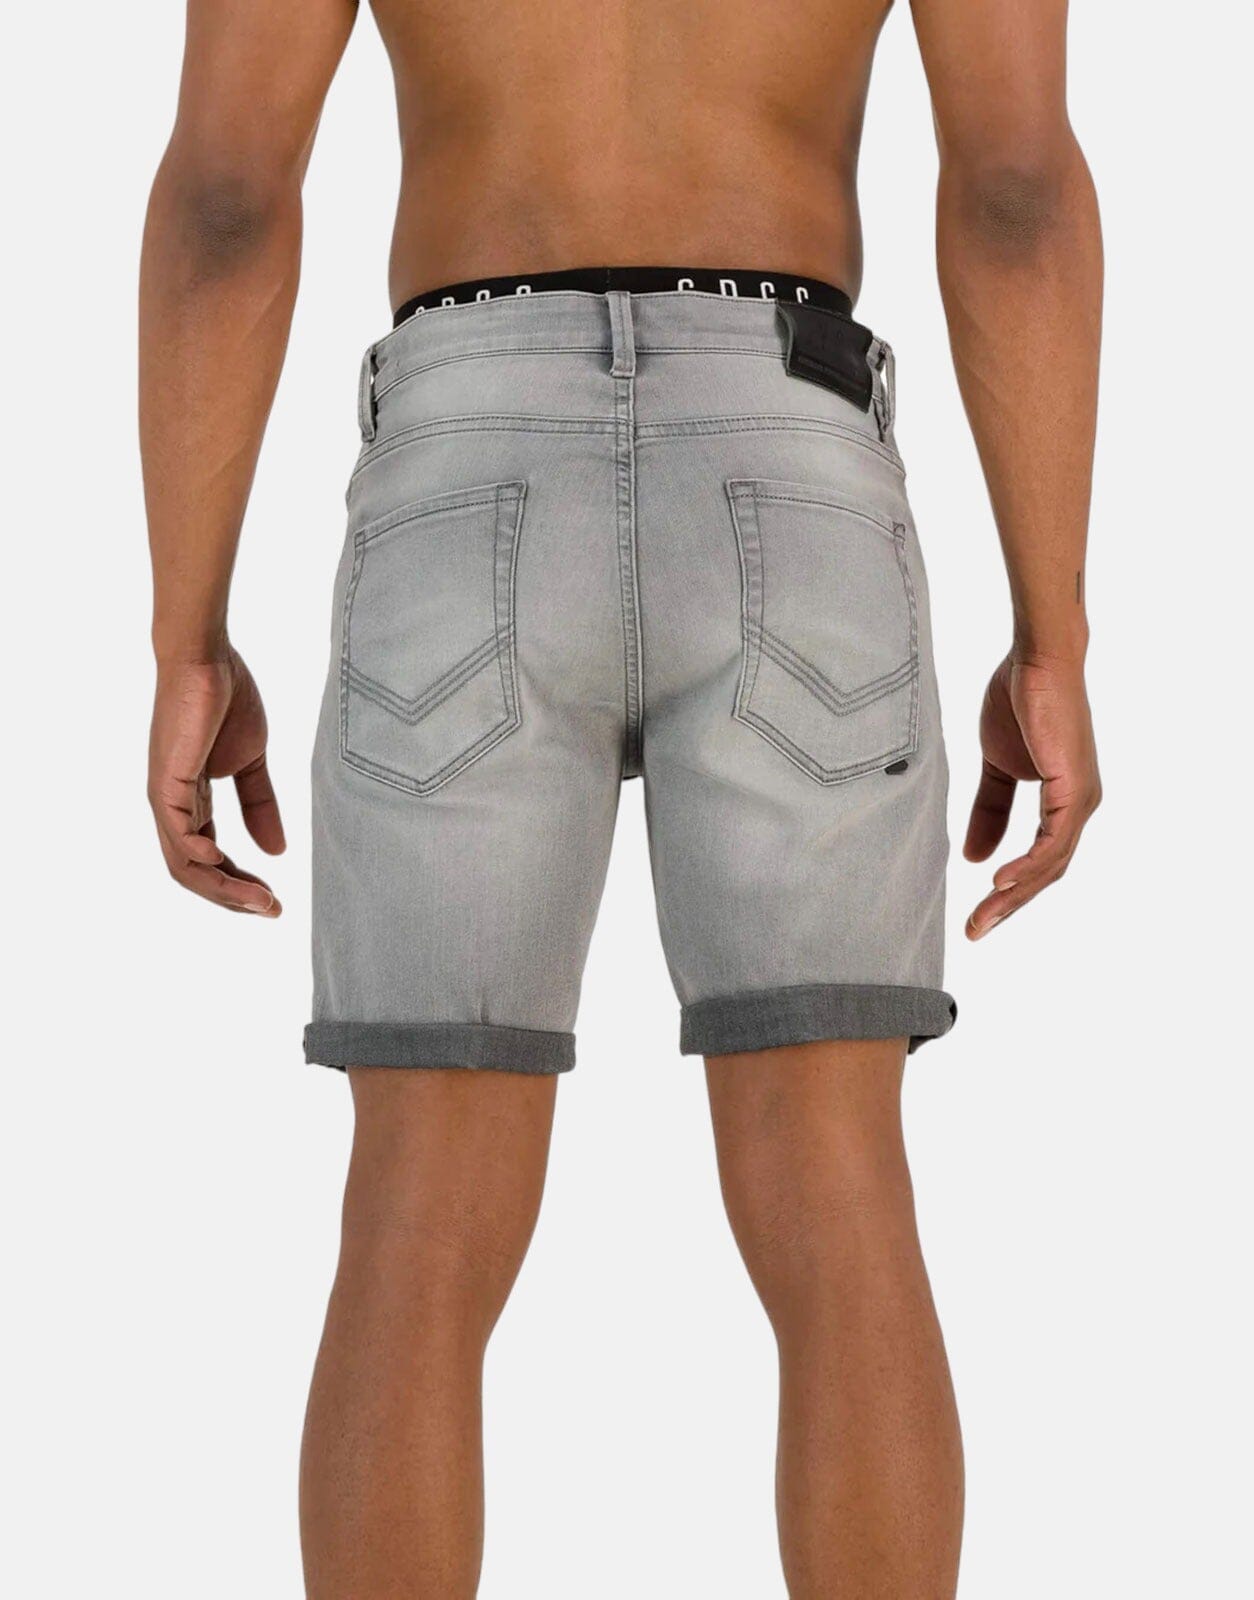 SPCC Asphalt Denim Shorts - Subwear